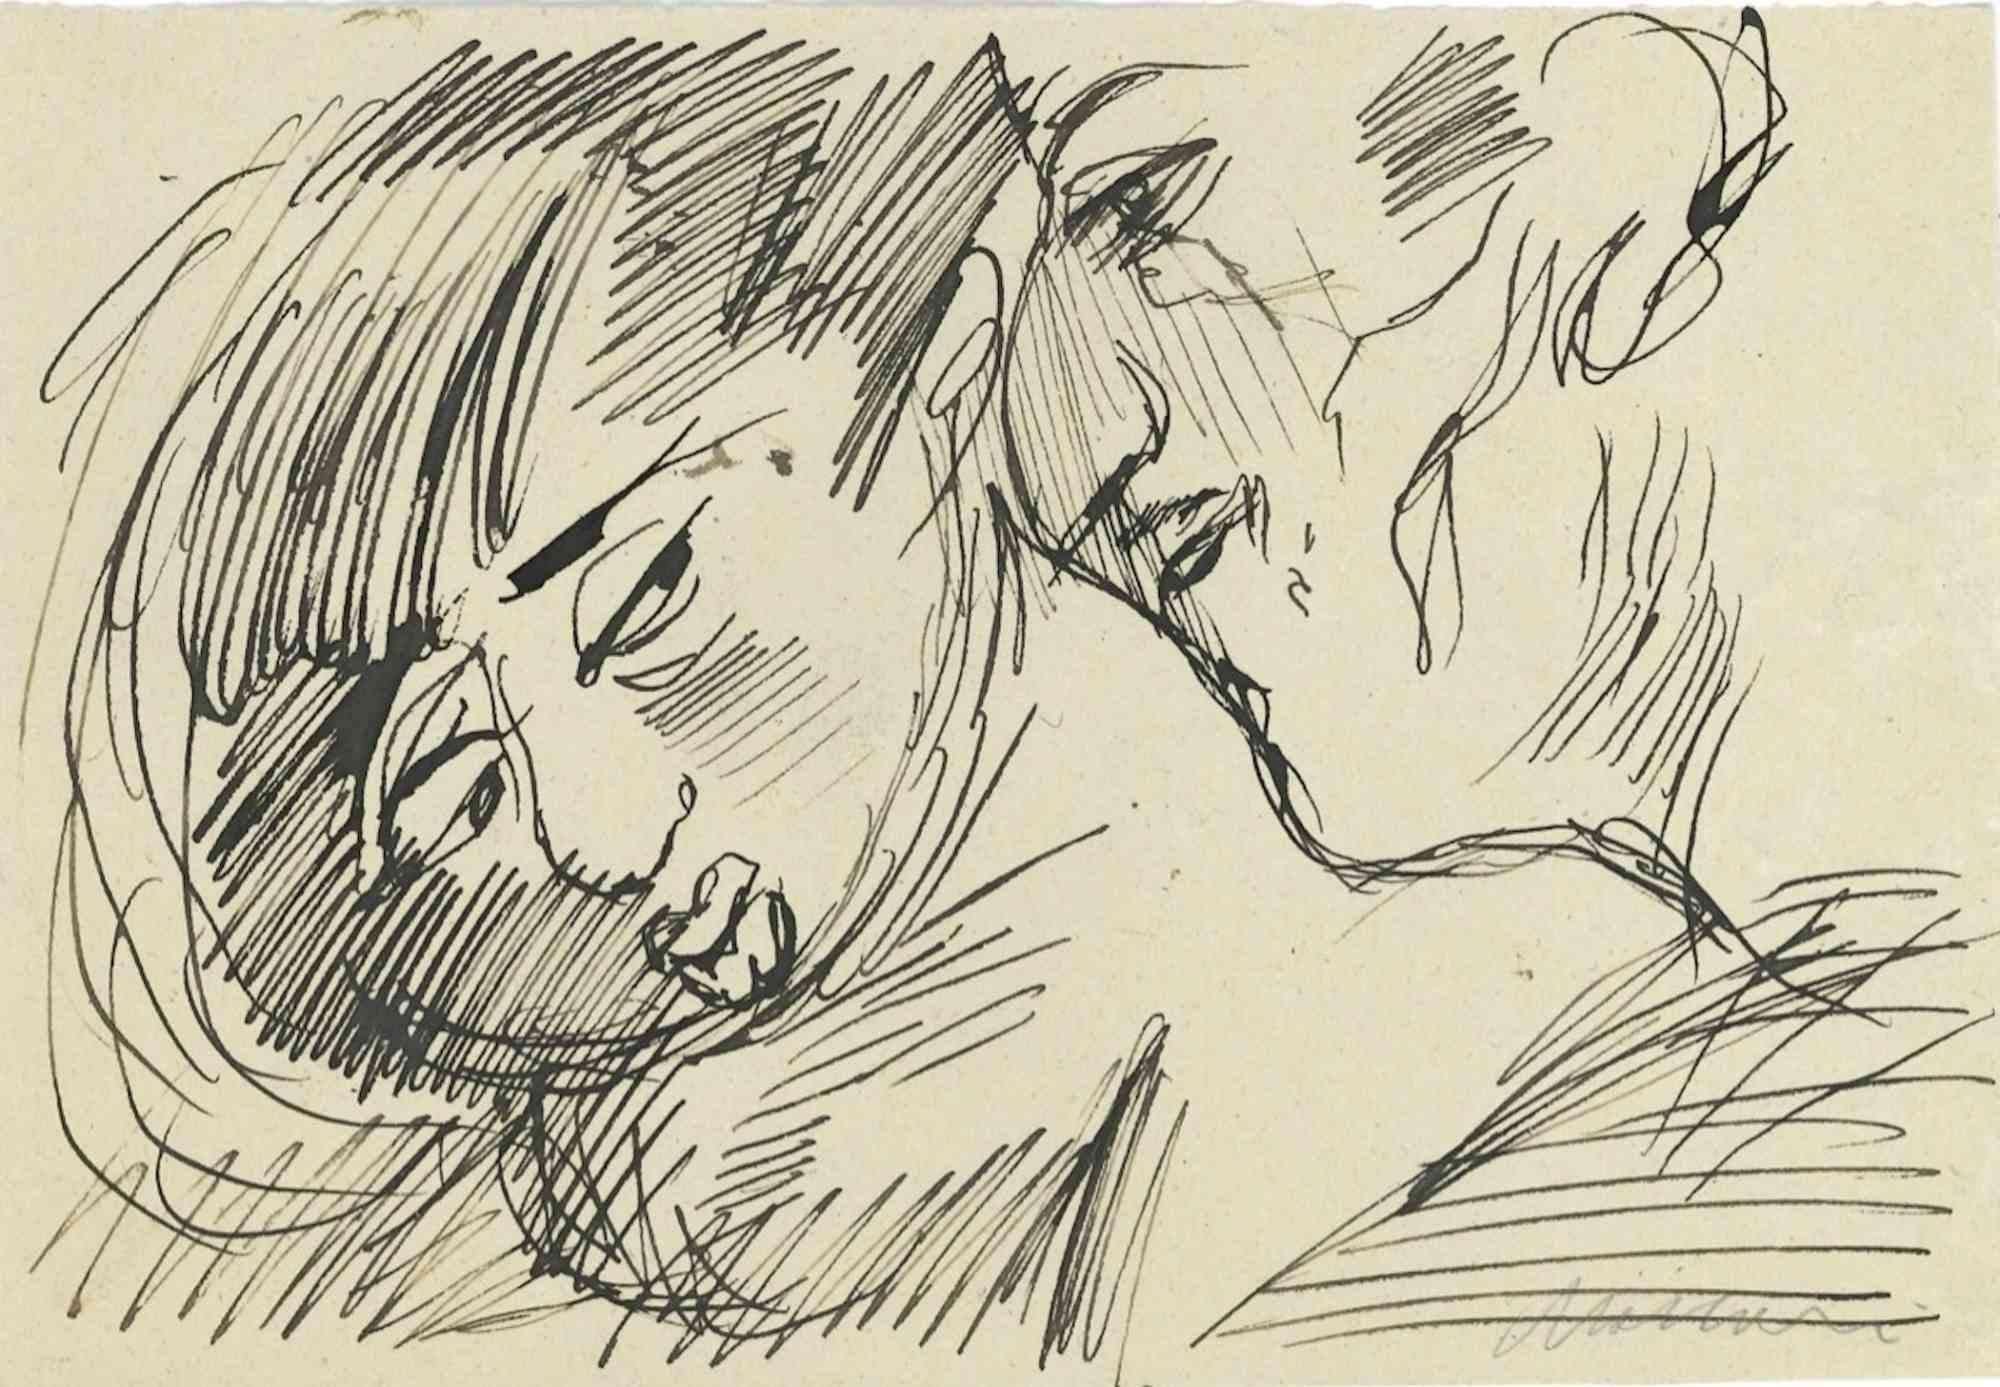 Portraits ist eine Tuschezeichnung von Mino Maccari (1924-1989) aus der Mitte des 20. Jahrhunderts.

Handsigniert.

Guter Zustand mit leichten Stockflecken.

Mino Maccari (Siena, 1924-Rom, 16. Juni 1989) war ein italienischer Schriftsteller, Maler,